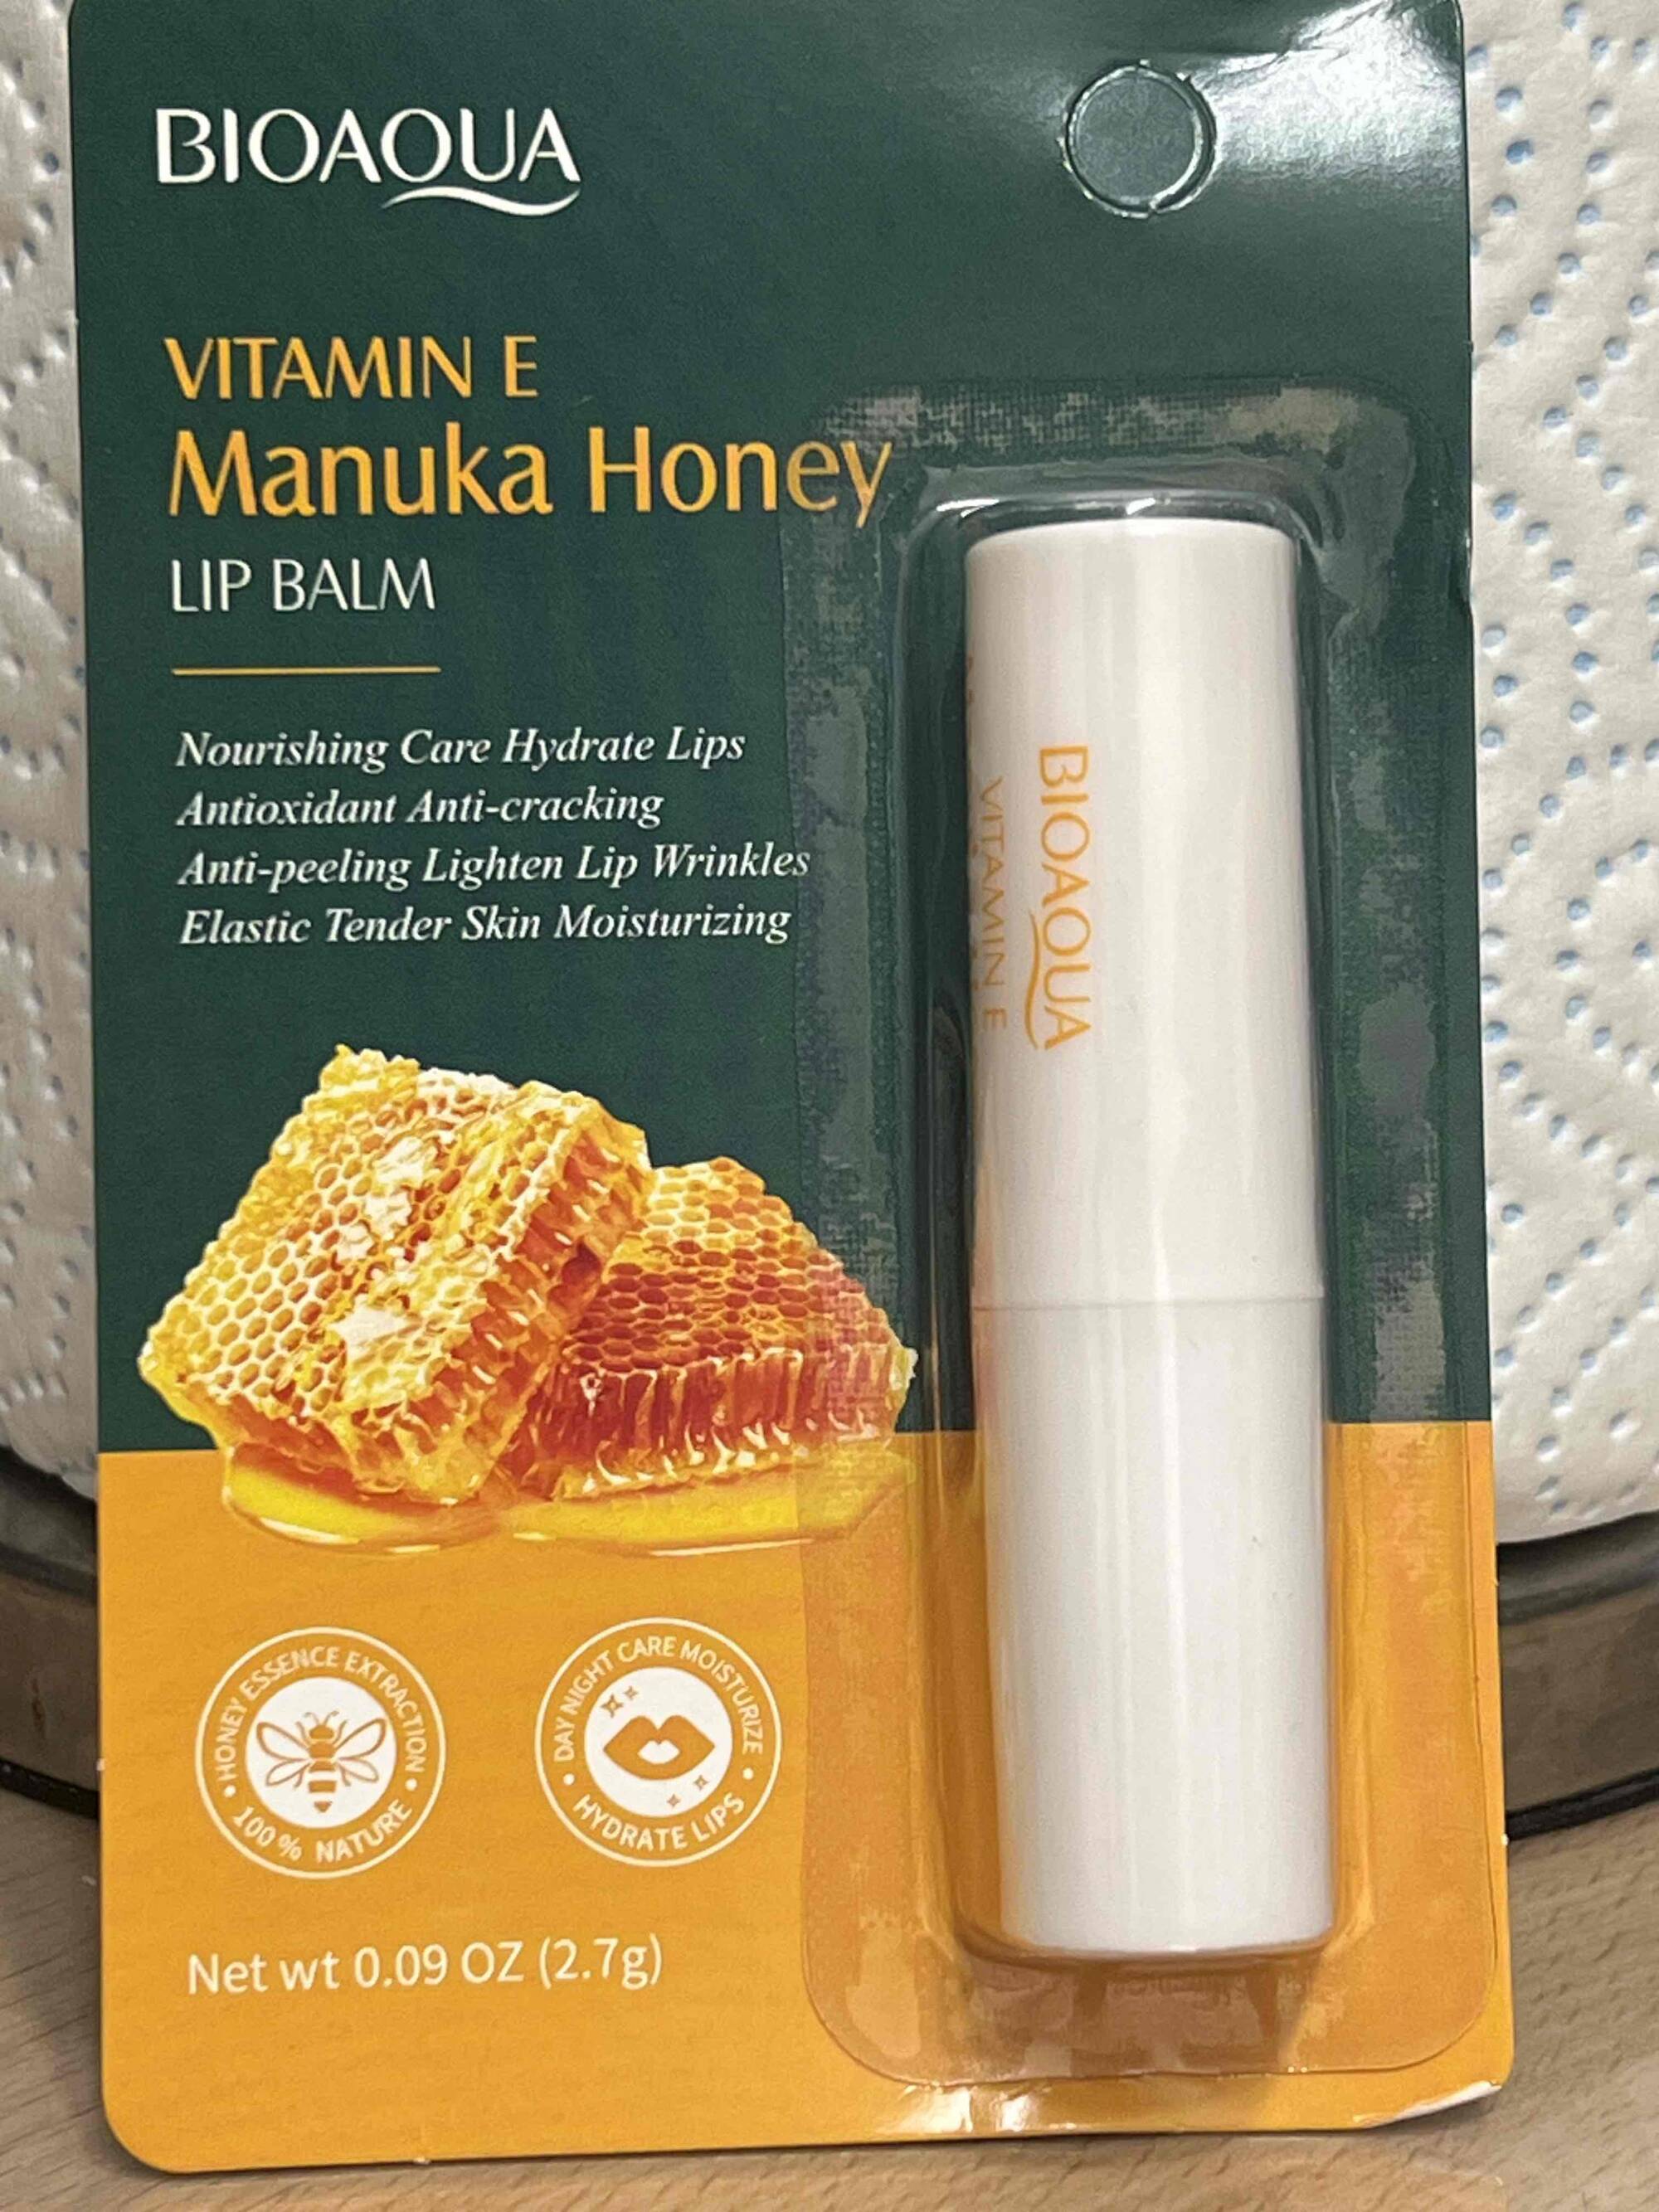 BIOAQUA - Vitamin E manuka honey - Lip balm